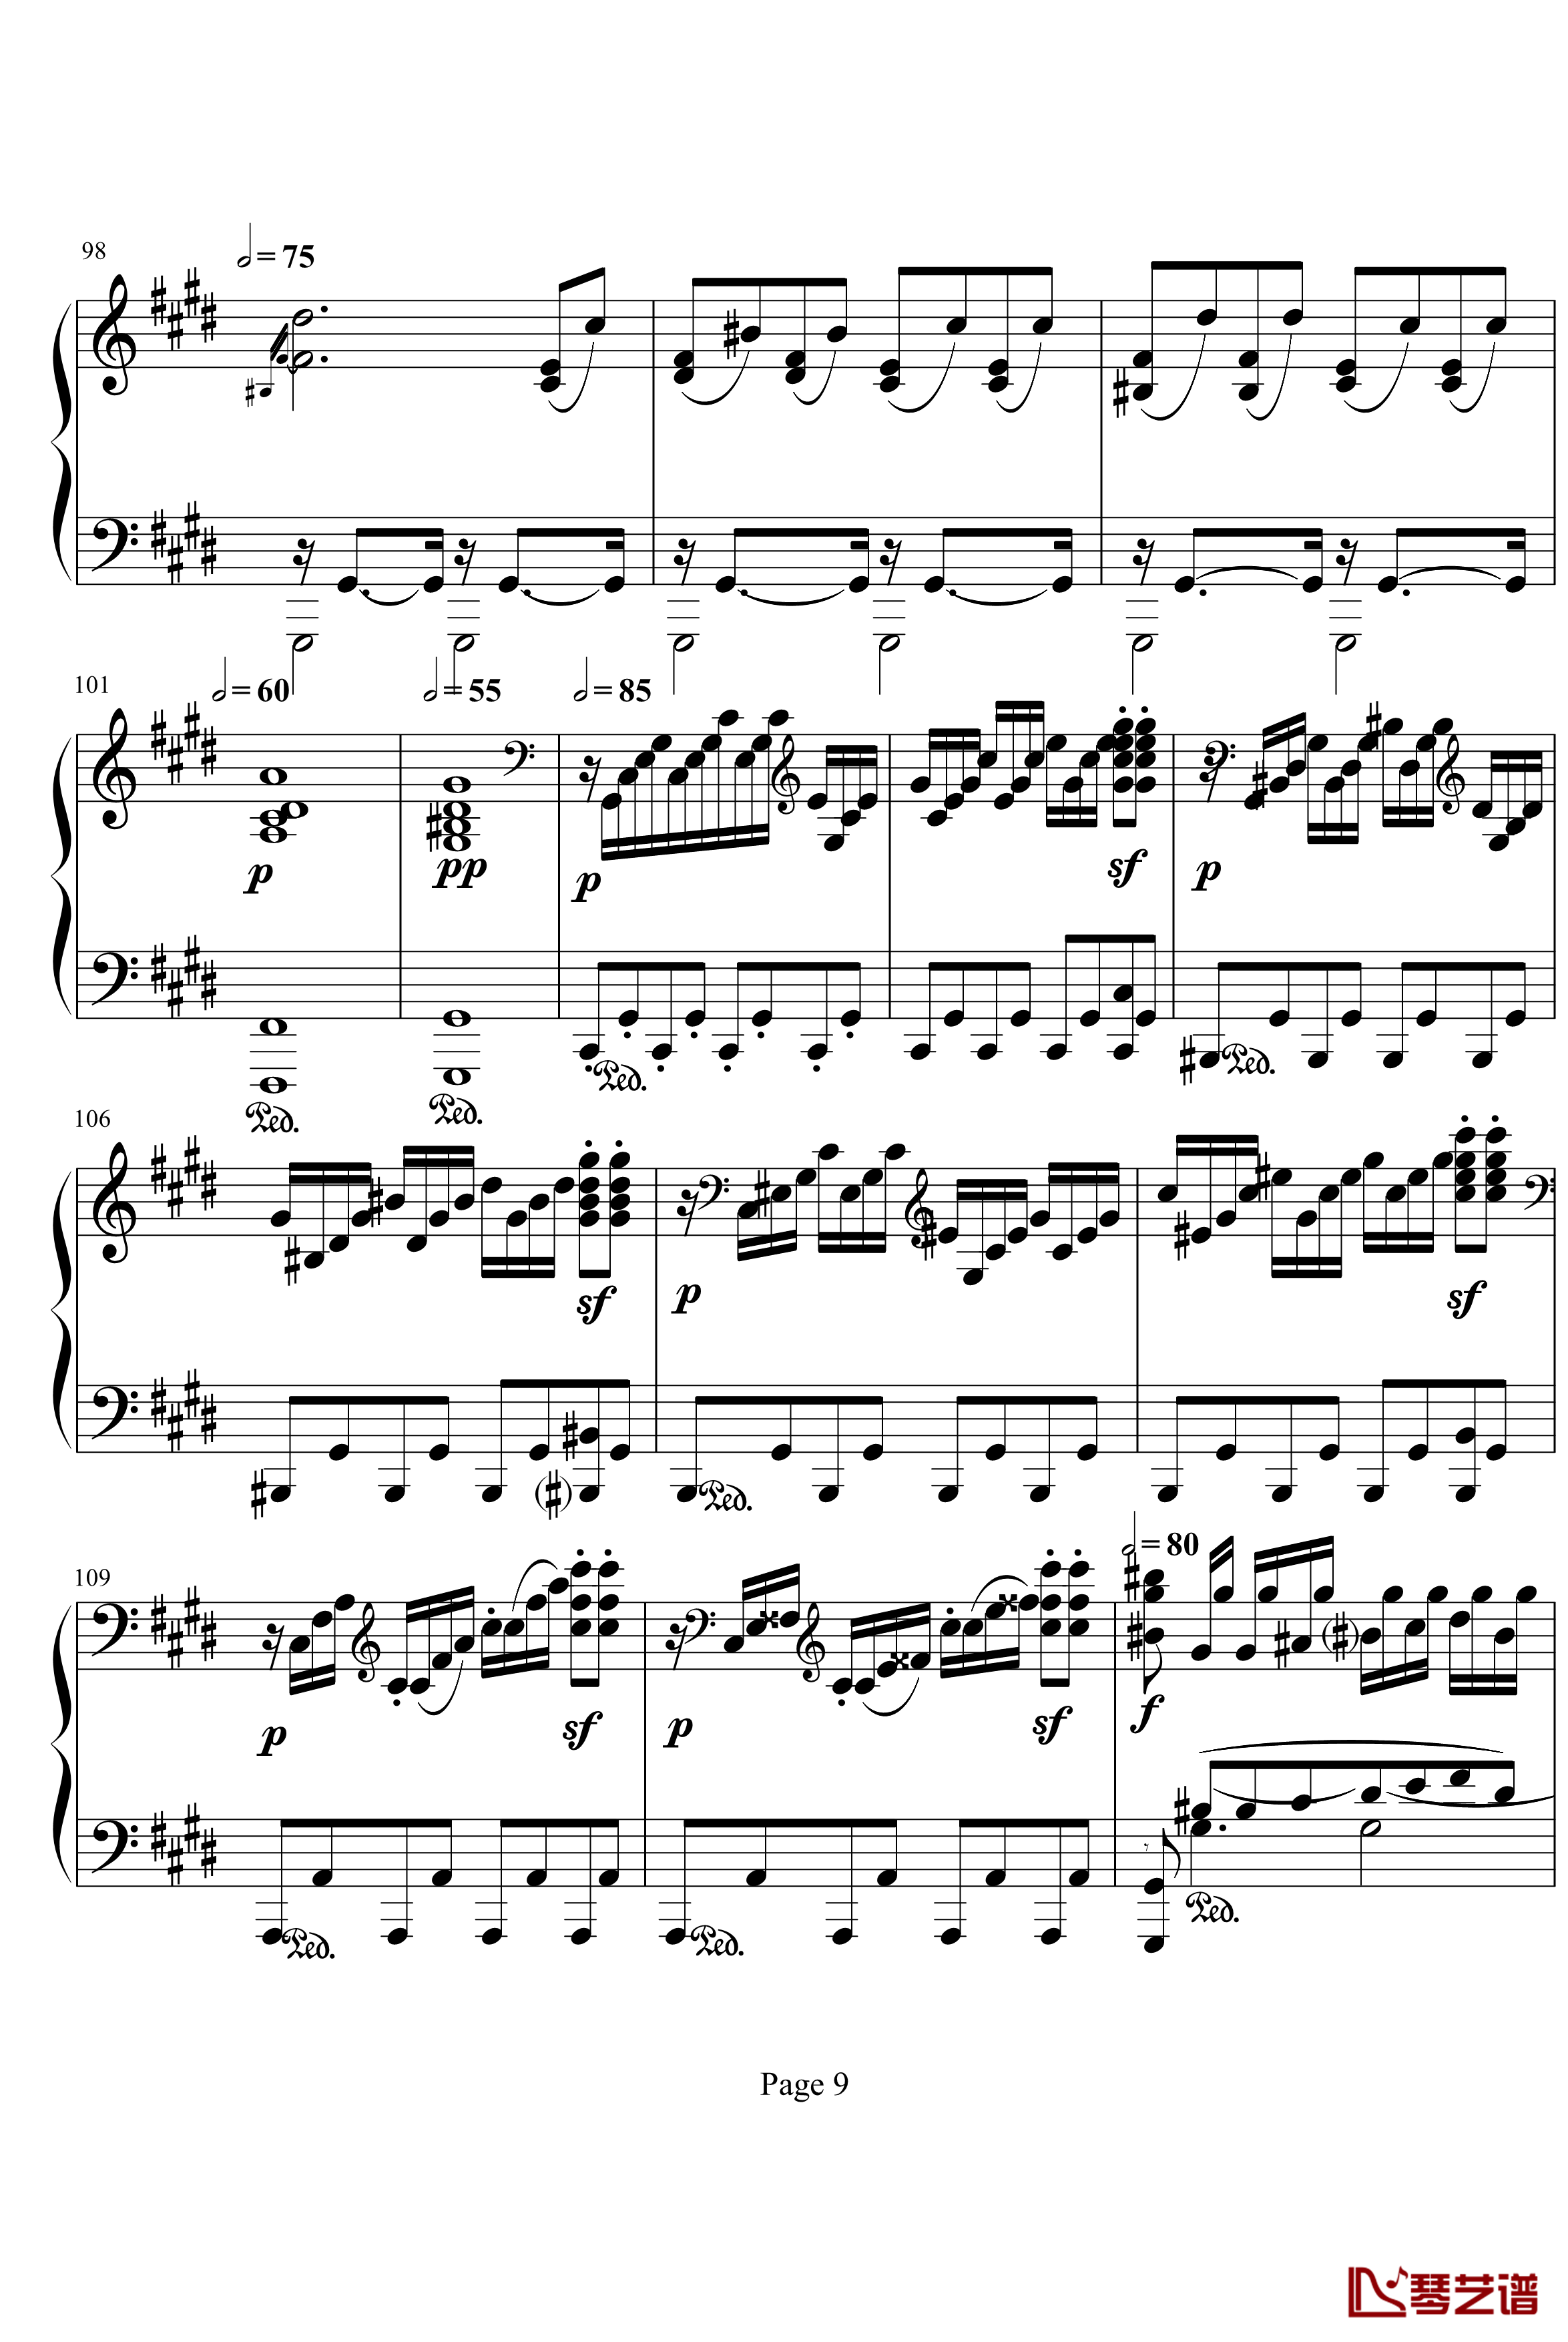 月光奏明曲钢琴谱-作品27之2-贝多芬-beethoven9